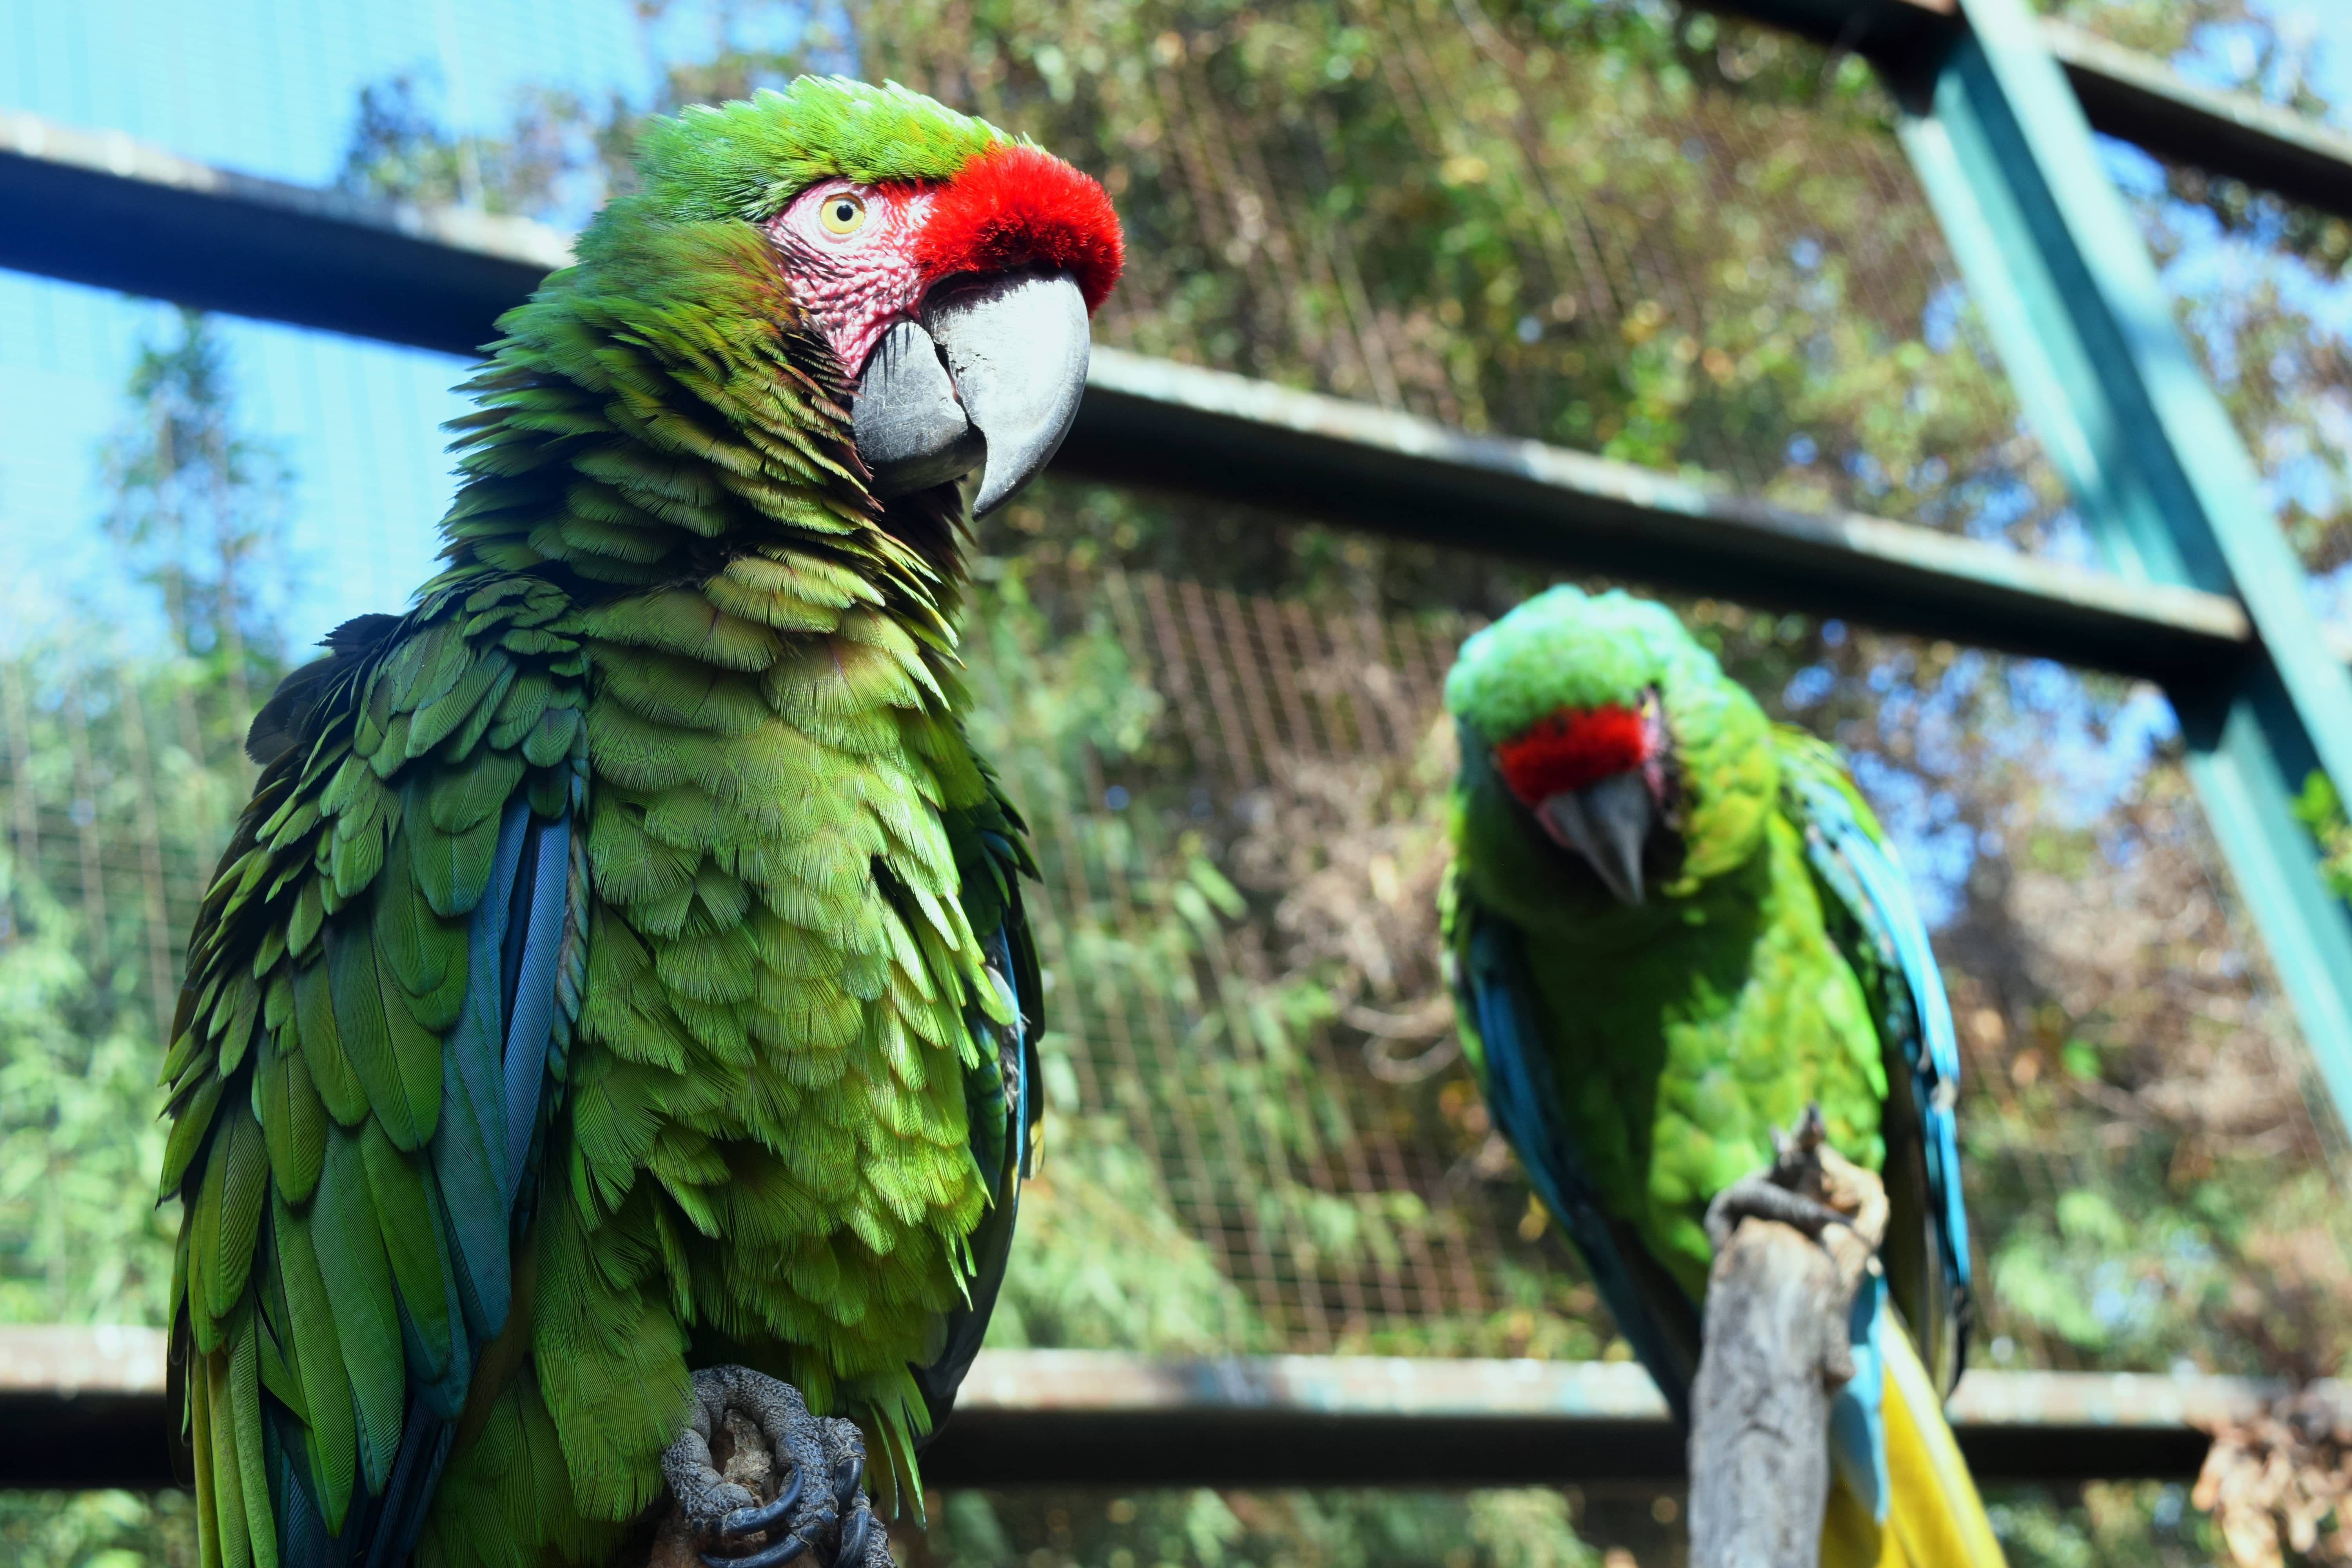 Preserva Parque Morelos a la guacamaya verde El zoológico alberga ocho  parejas de guacamayas verdes - Guardián Tijuana